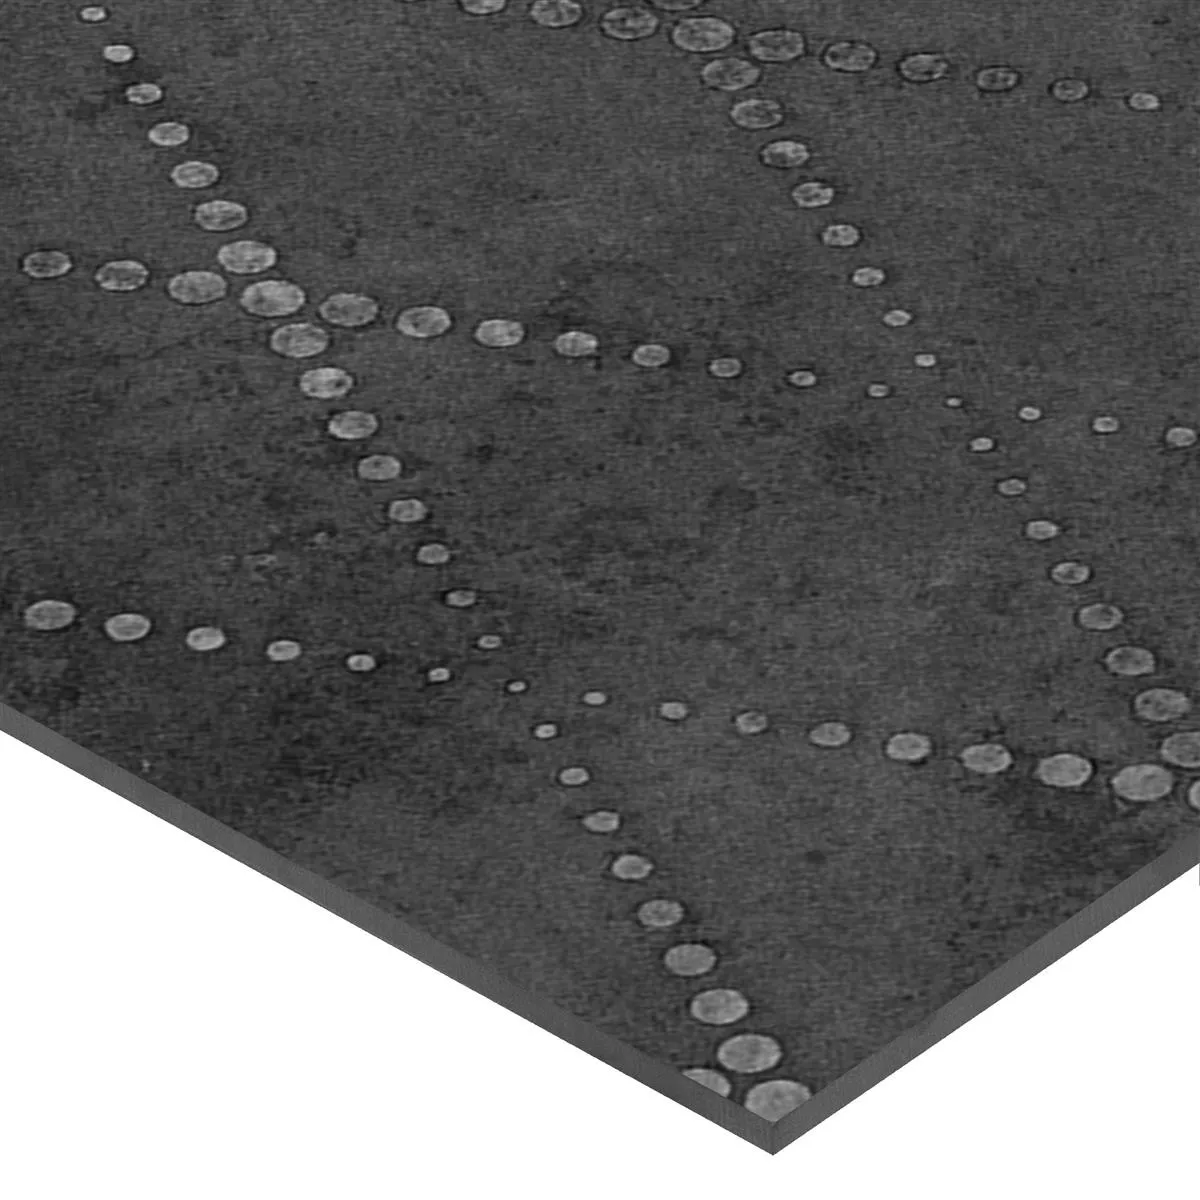 Próbka Płytki Podłogowe Chicago Metal Optyka Antracyt R9 - 18,5x18,5cm Pattern 2